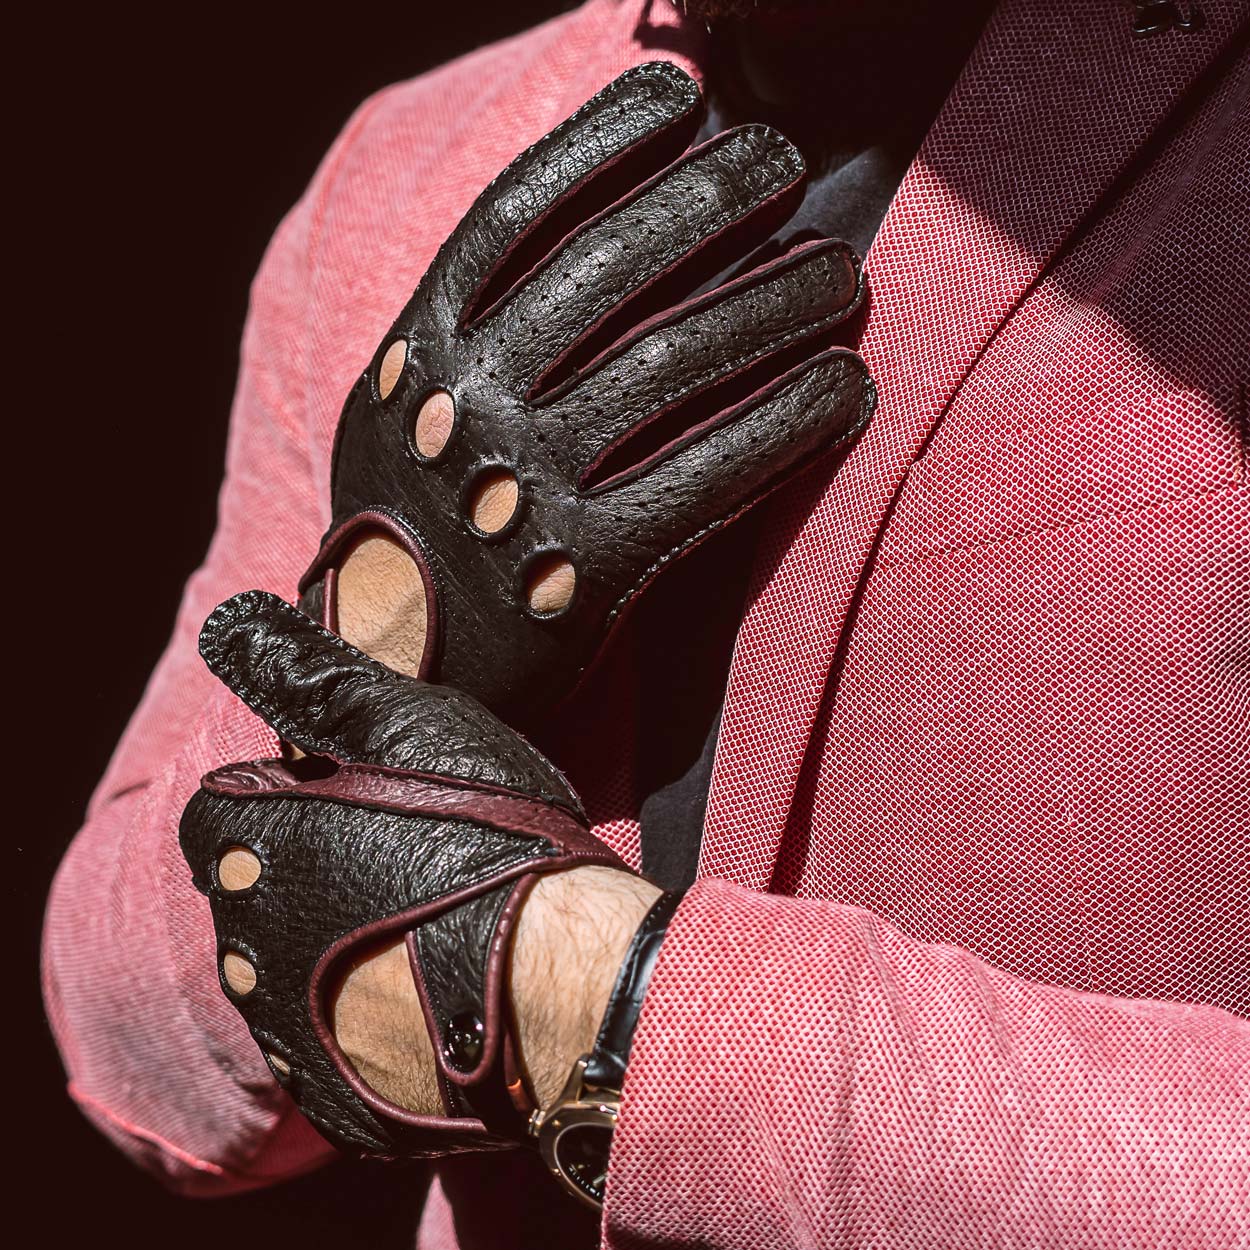 Bordeaux driving gloves handmade by Italian artisans